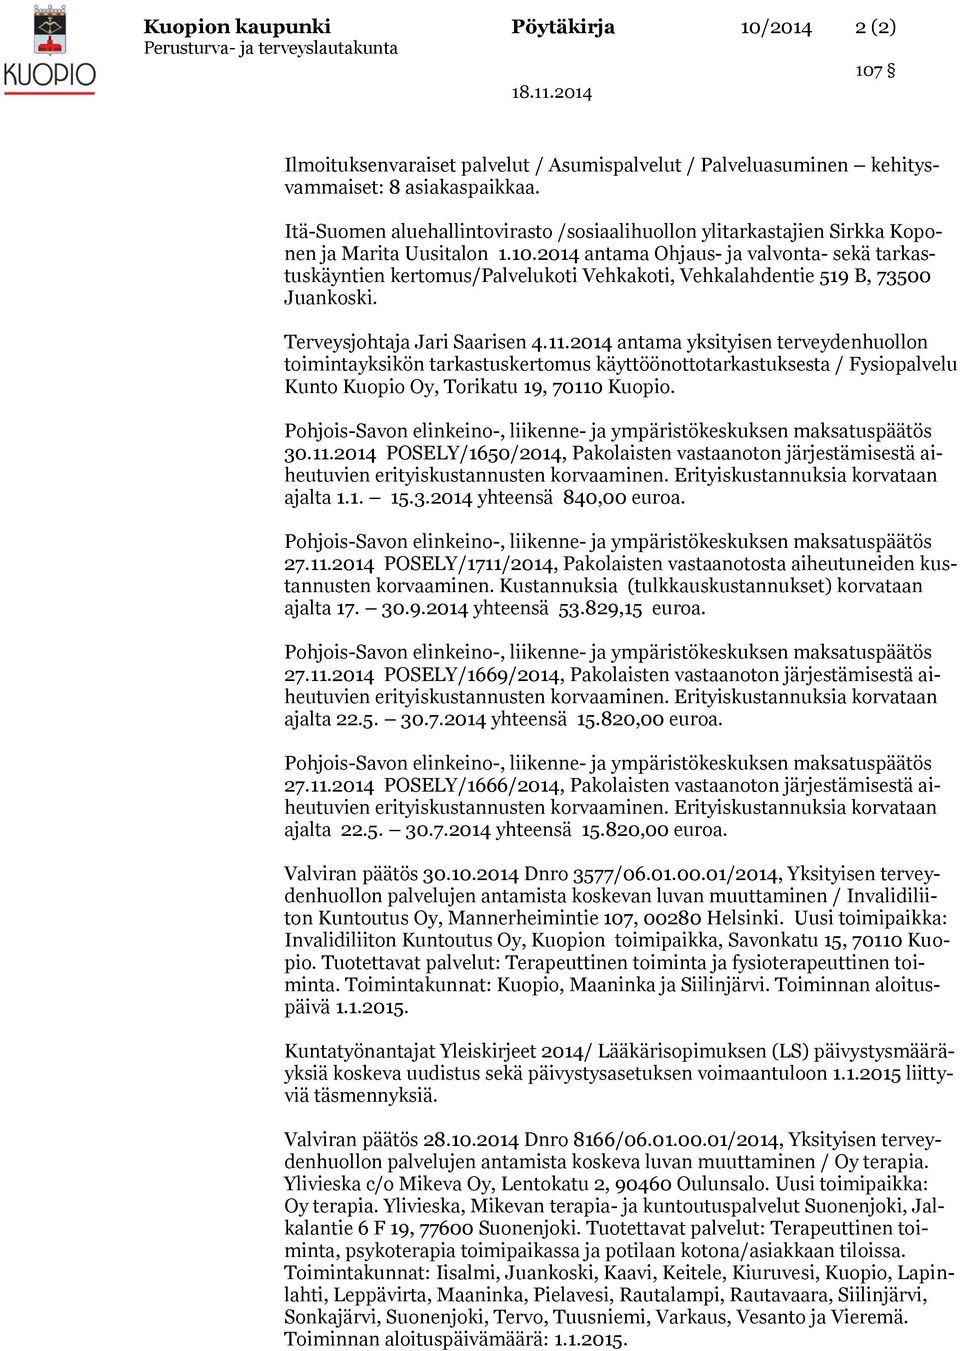 2014 antama Ohjaus- ja valvonta- sekä tarkastuskäyntien kertomus/palvelukoti Vehkakoti, Vehkalahdentie 519 B, 73500 Juankoski. Terveysjohtaja Jari Saarisen 4.11.